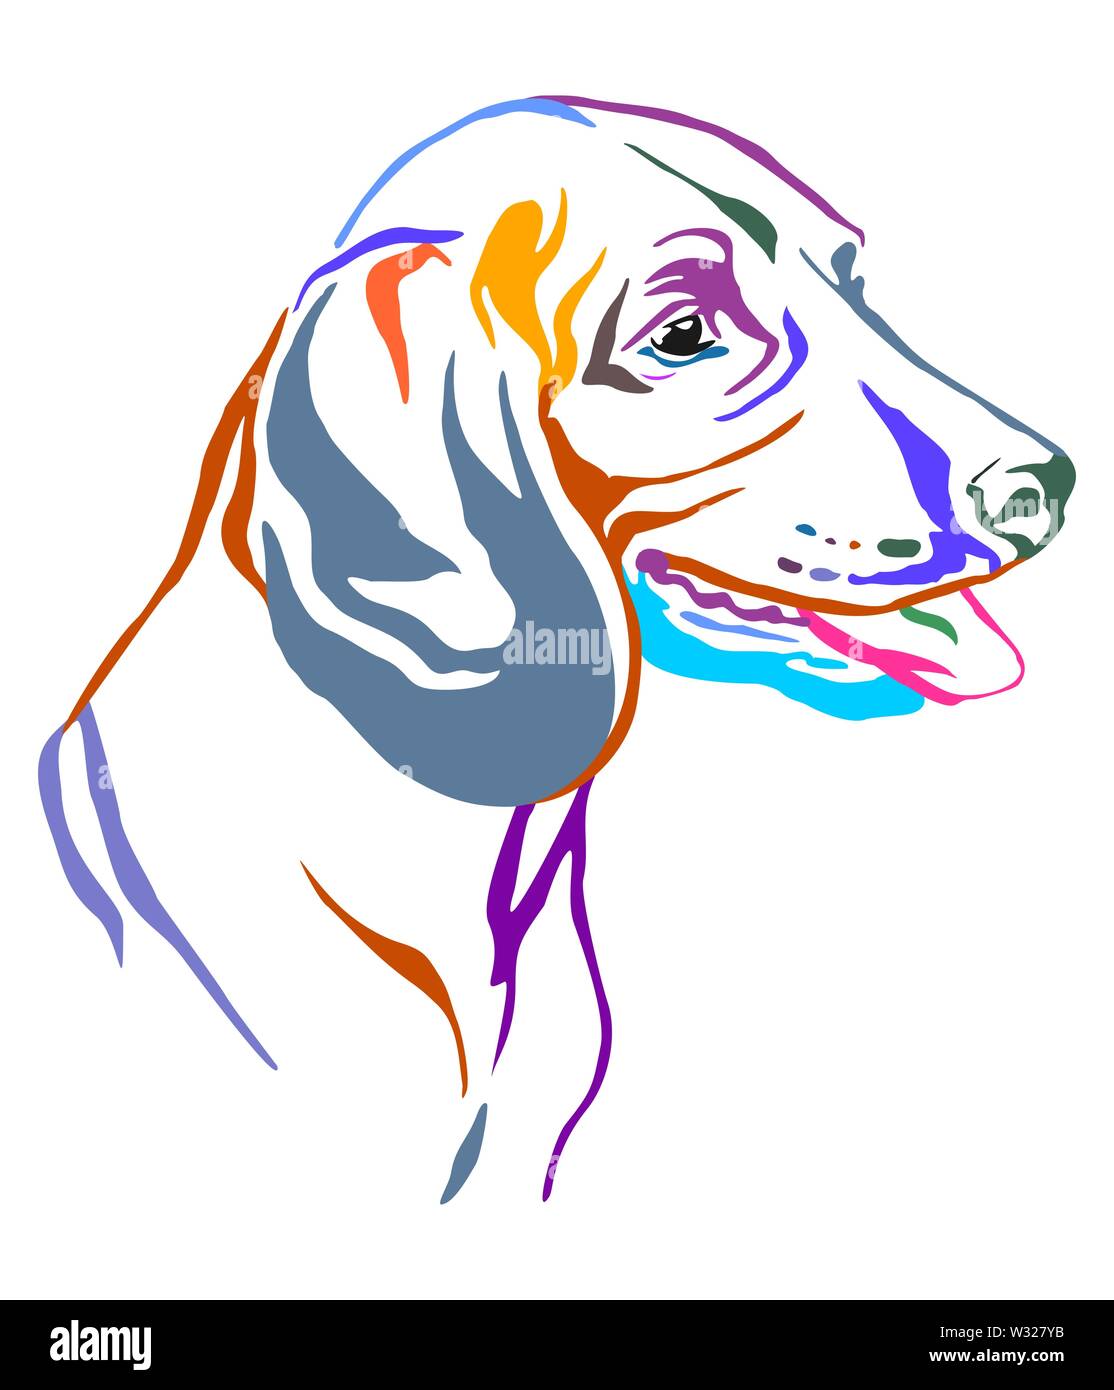 Colorato contorno decorativo ritratto di montagna bavarese hound dog cercando di profilo, illustrazione vettoriale in diversi colori isolato sul retro bianco Illustrazione Vettoriale